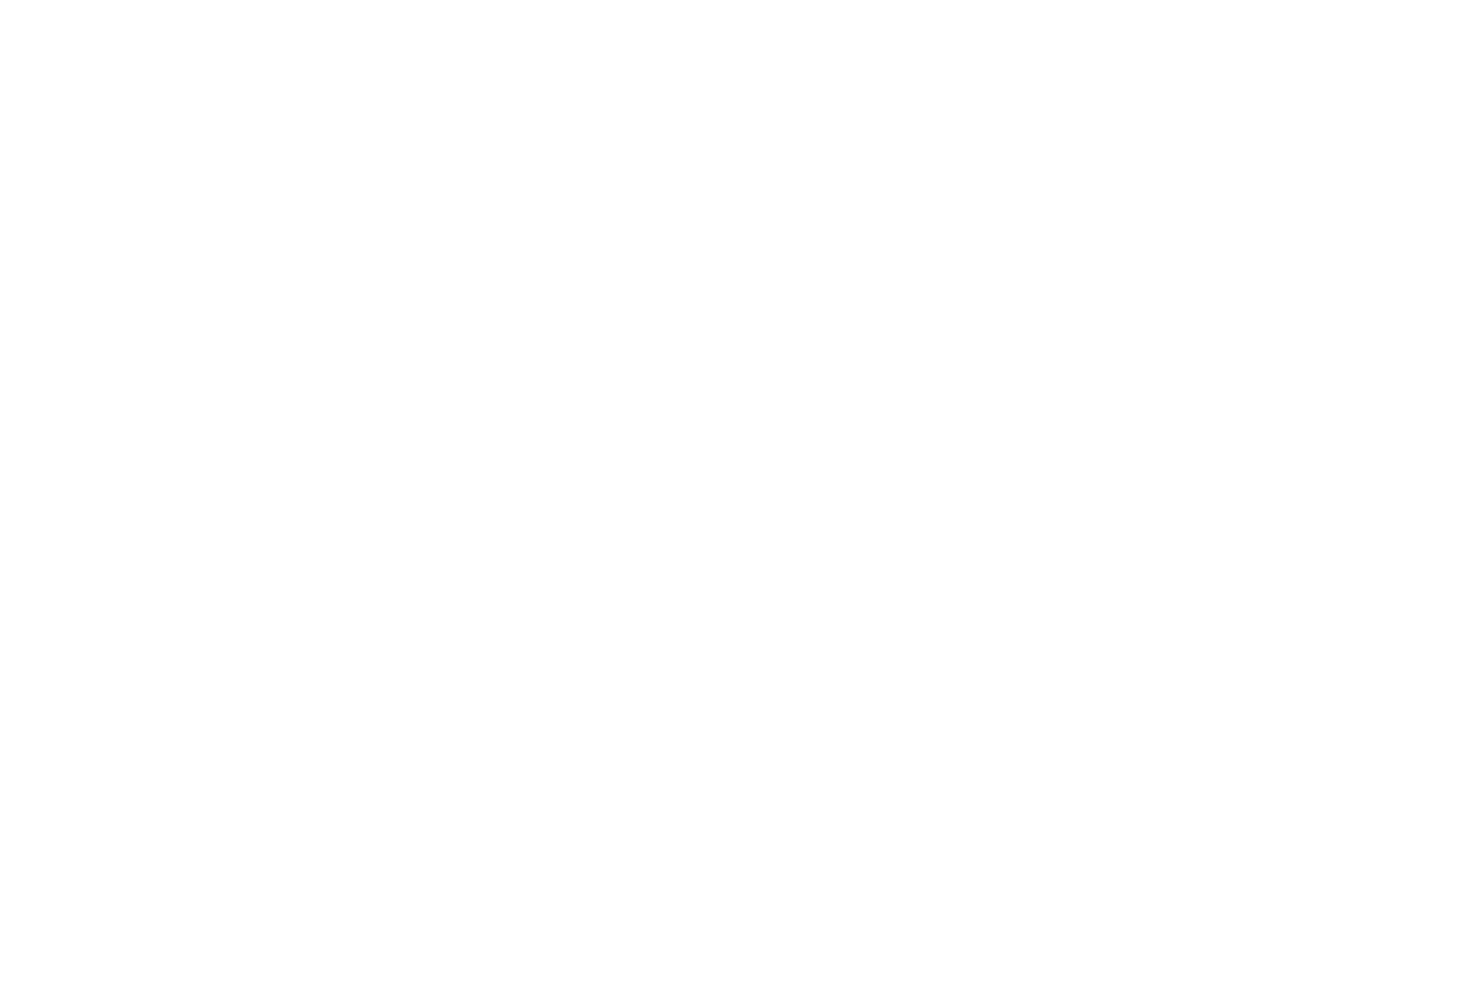 A Magical Christmas Village logo